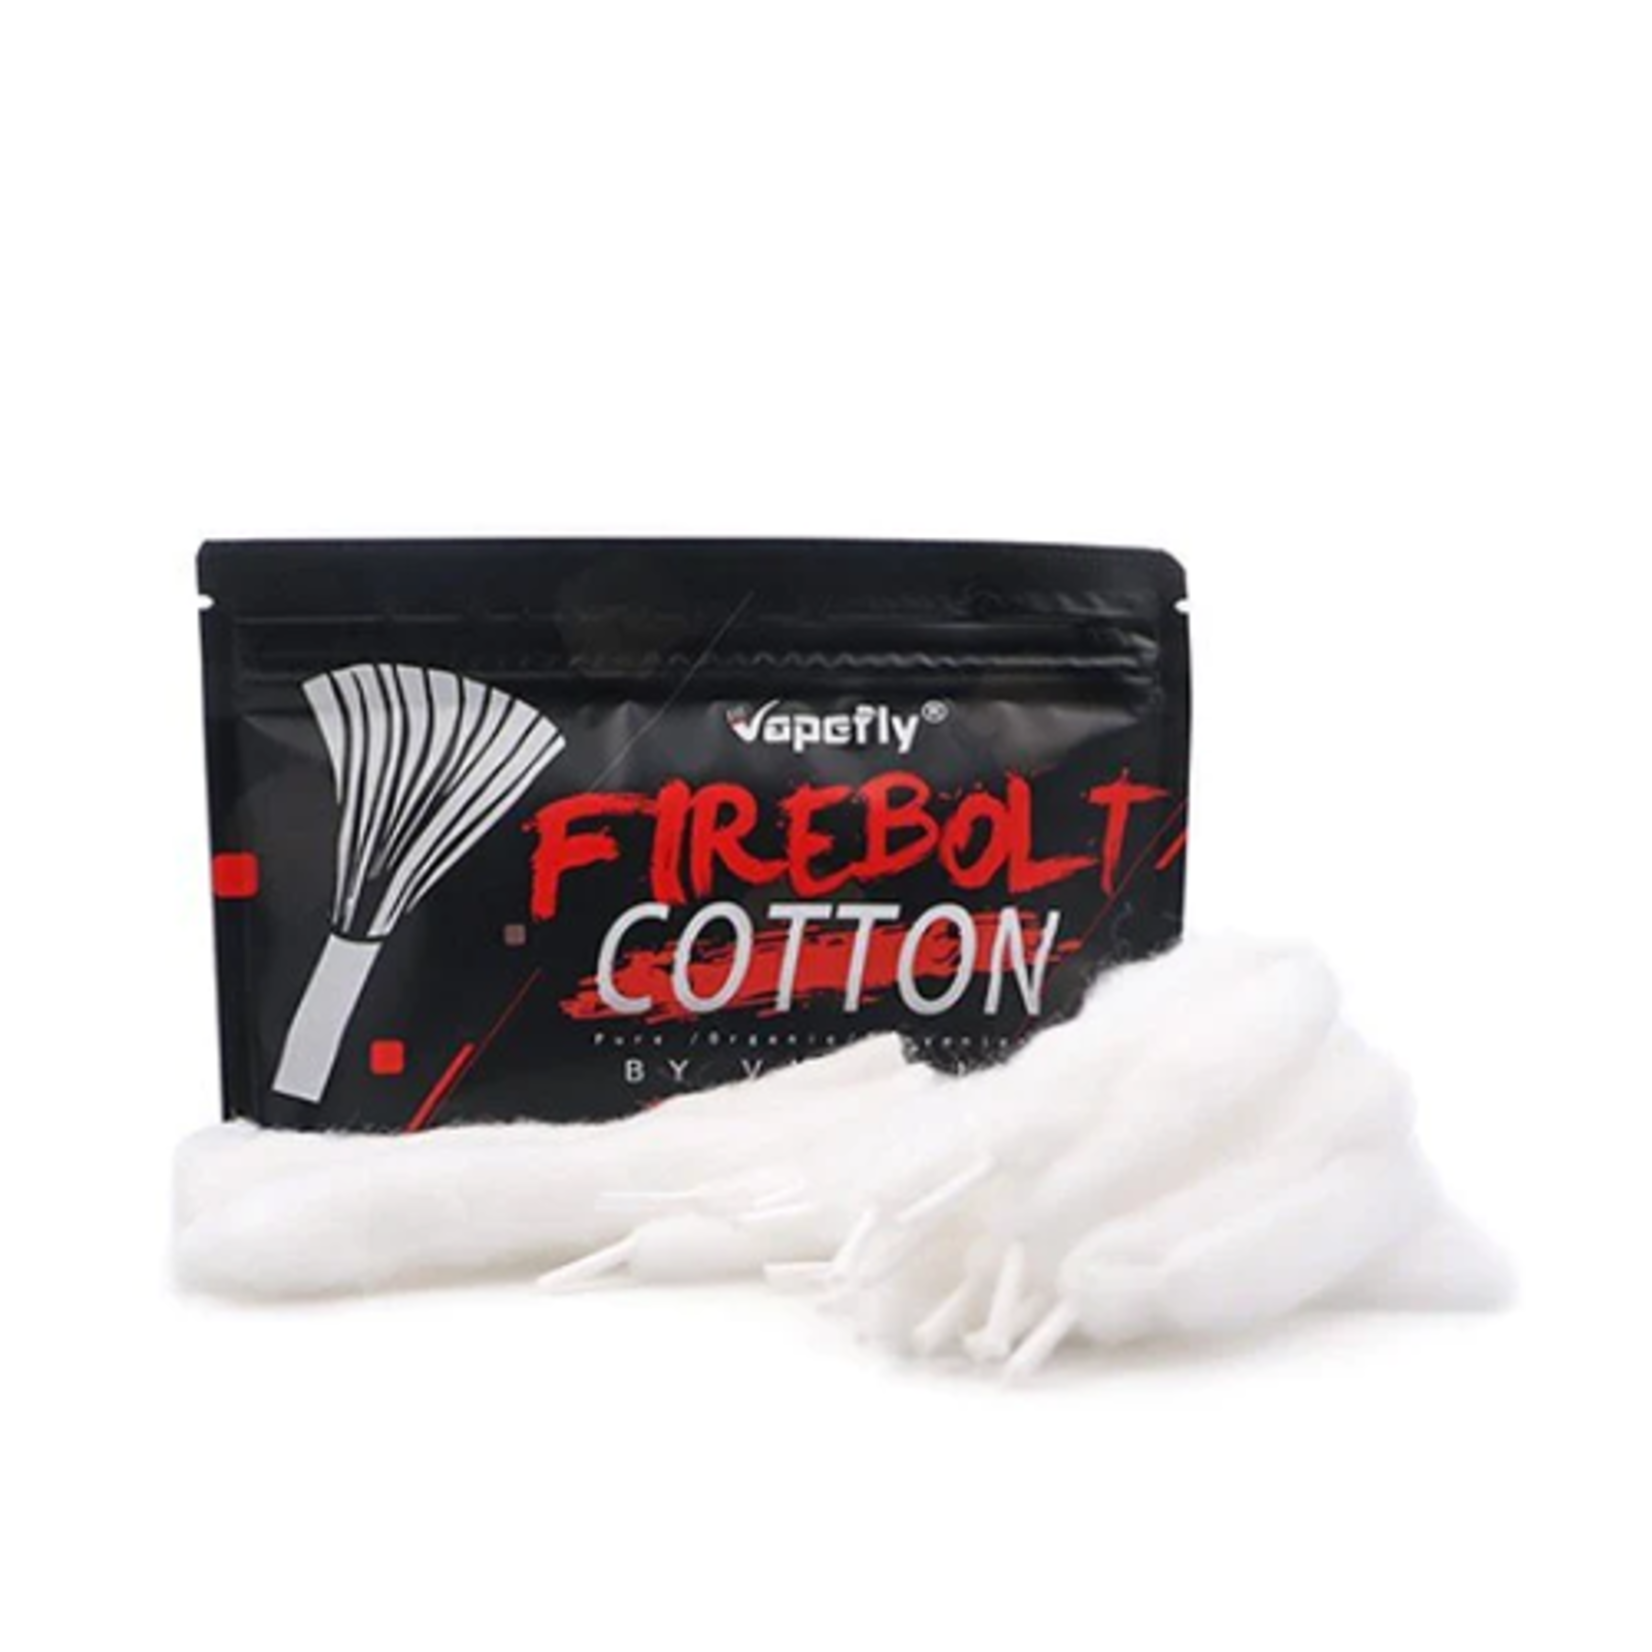 FireBolt Cotton